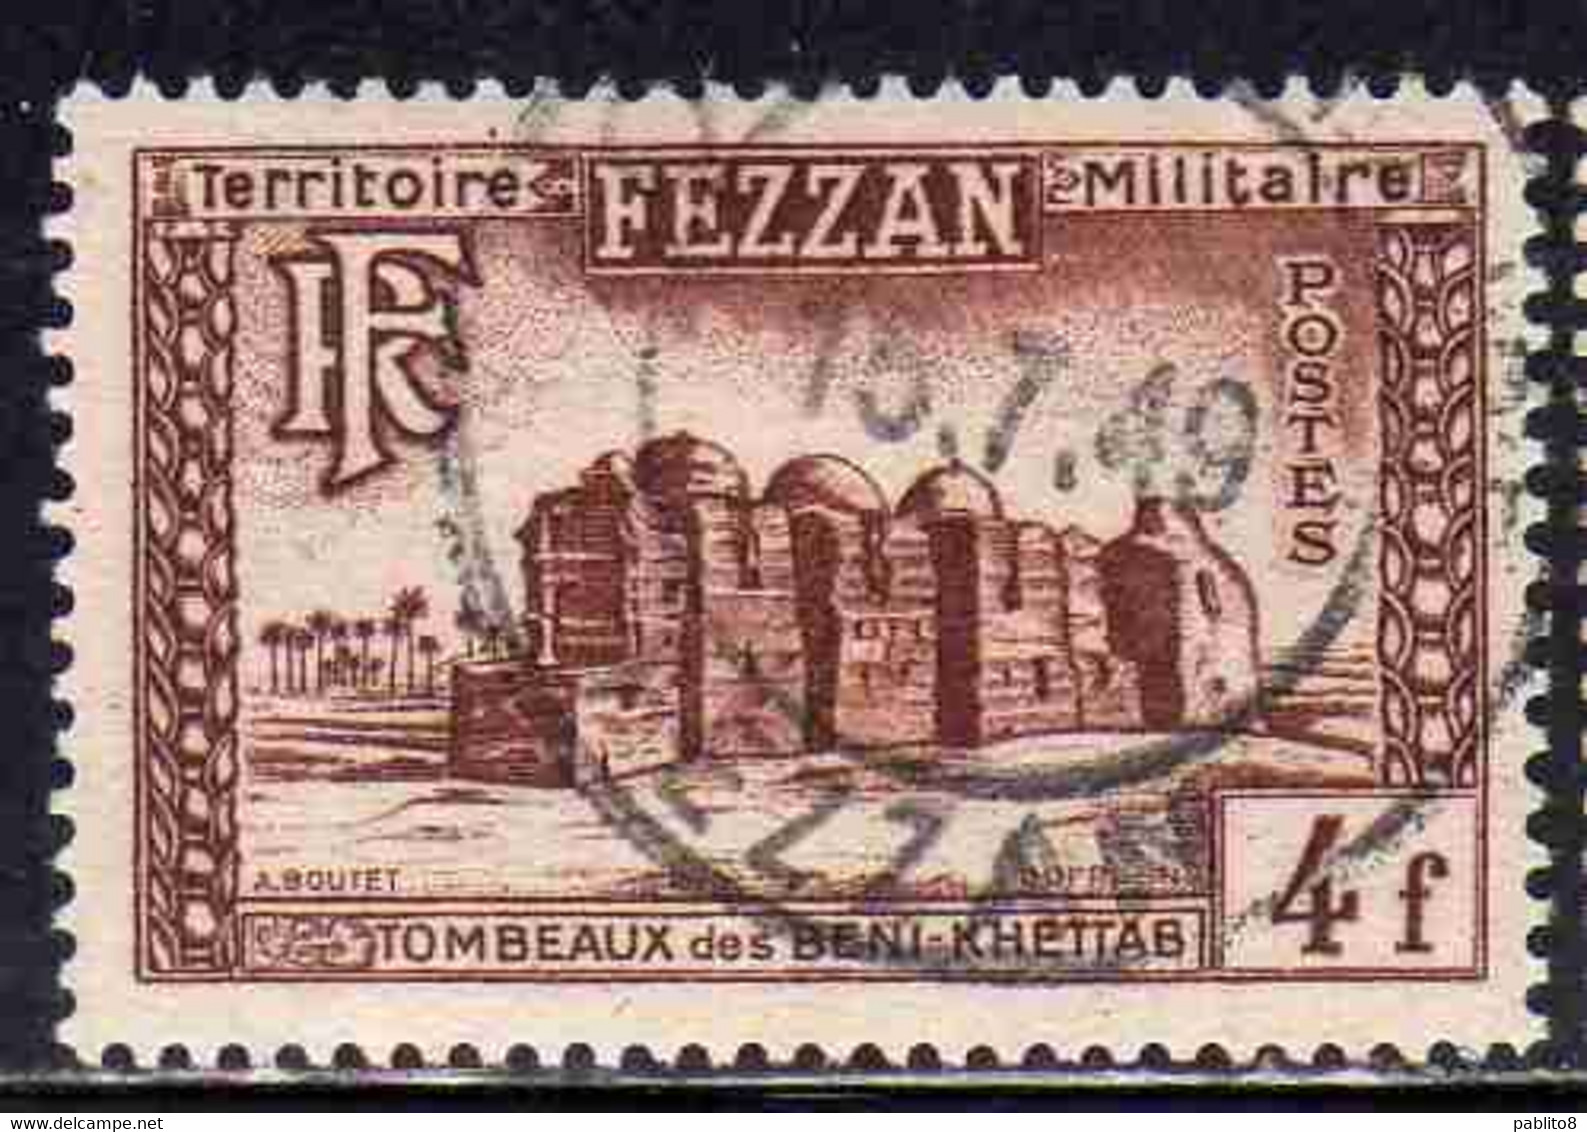 FEZZAN 1949 TERRITORIO MILITARE MILITAIRE TOMBA DI BENI KHETTAB 4f USATO USED OBLITERE' - Unused Stamps